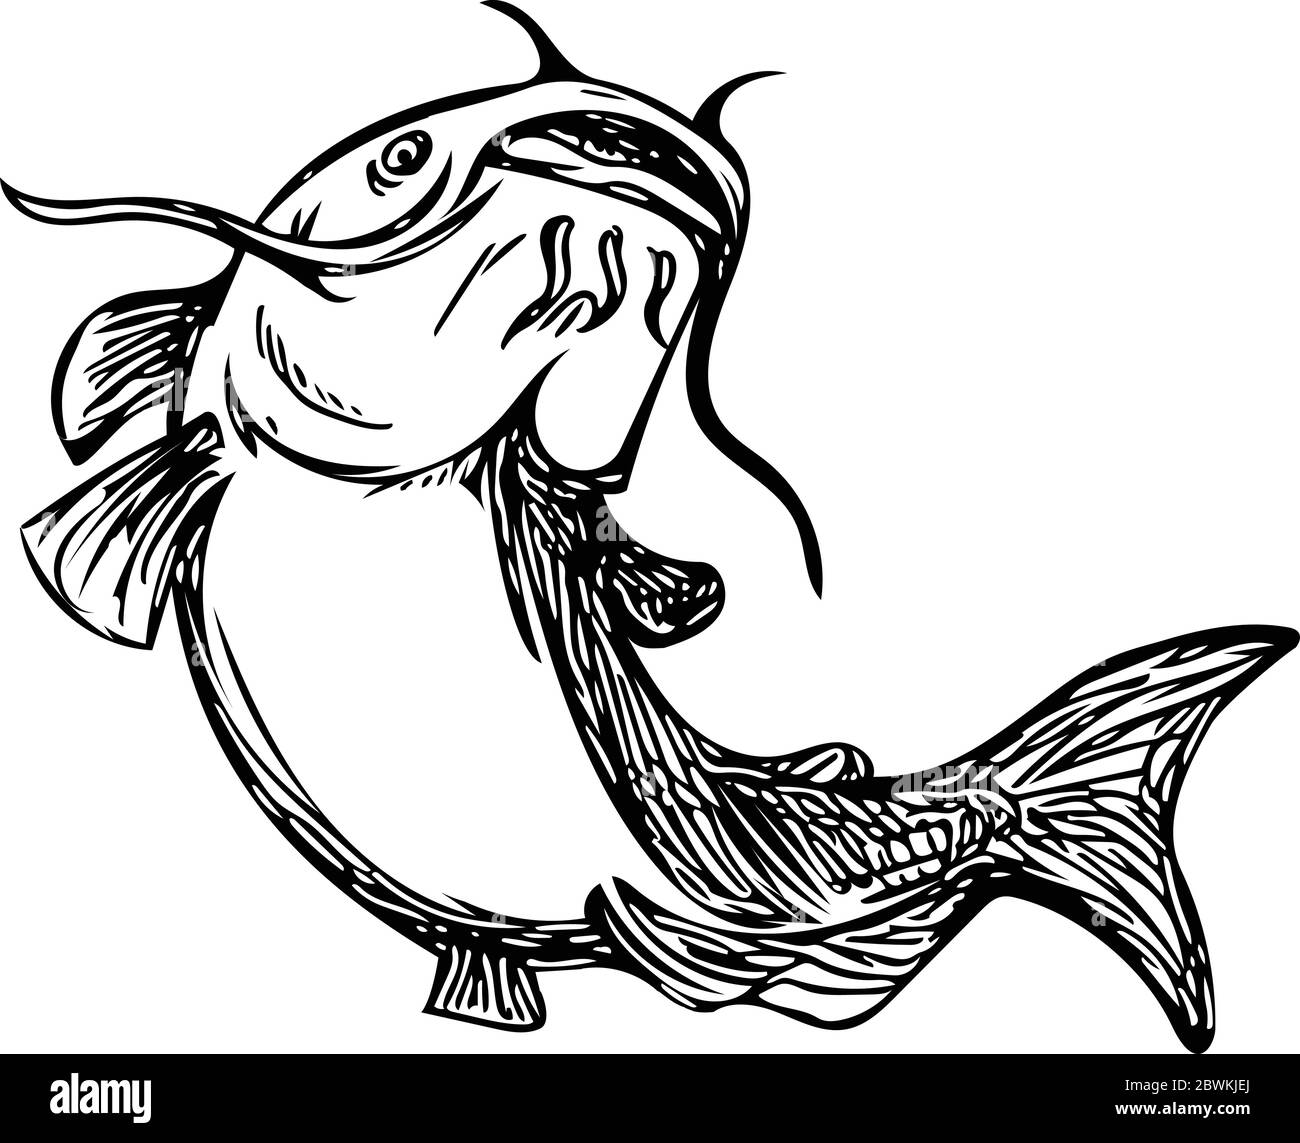 Dessin noir et blanc styleillustration d'un poisson-chat à rayons-fined également connu comme chat de boue, polliwogs ou chucklehead saut en place sur l'isola Illustration de Vecteur